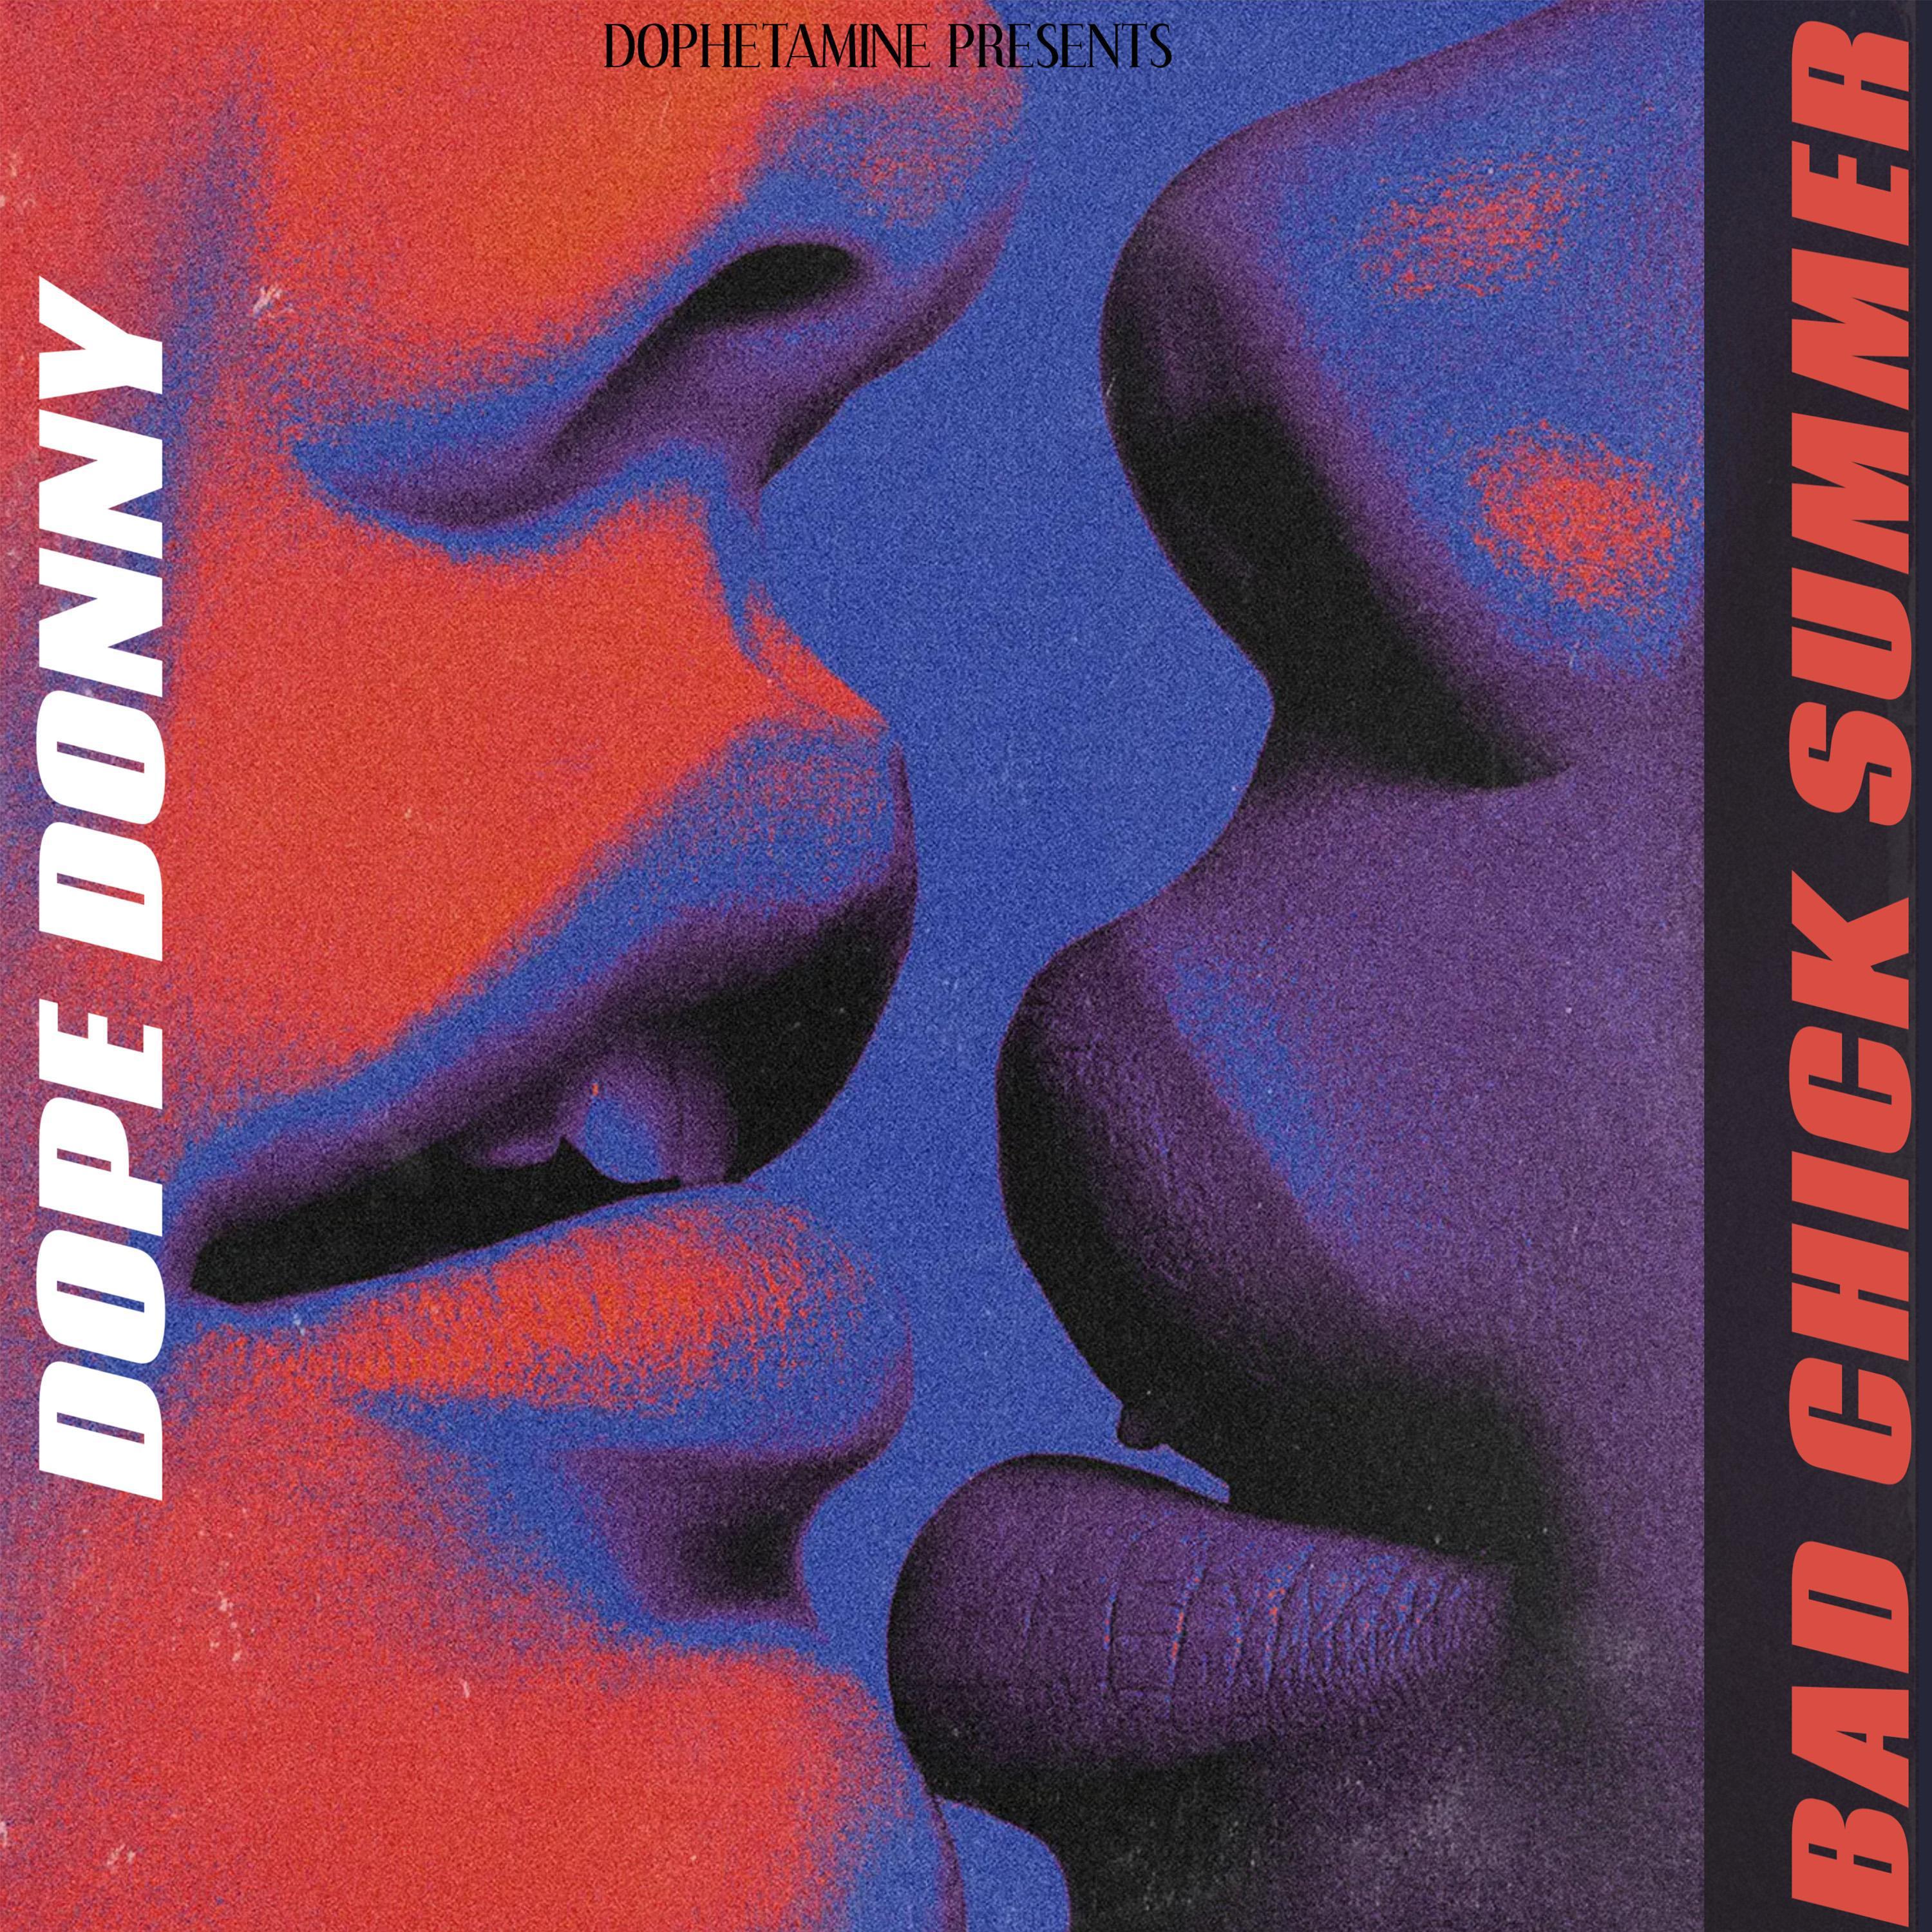 Dope Donny - Bad ***** Summer (Clean Version)